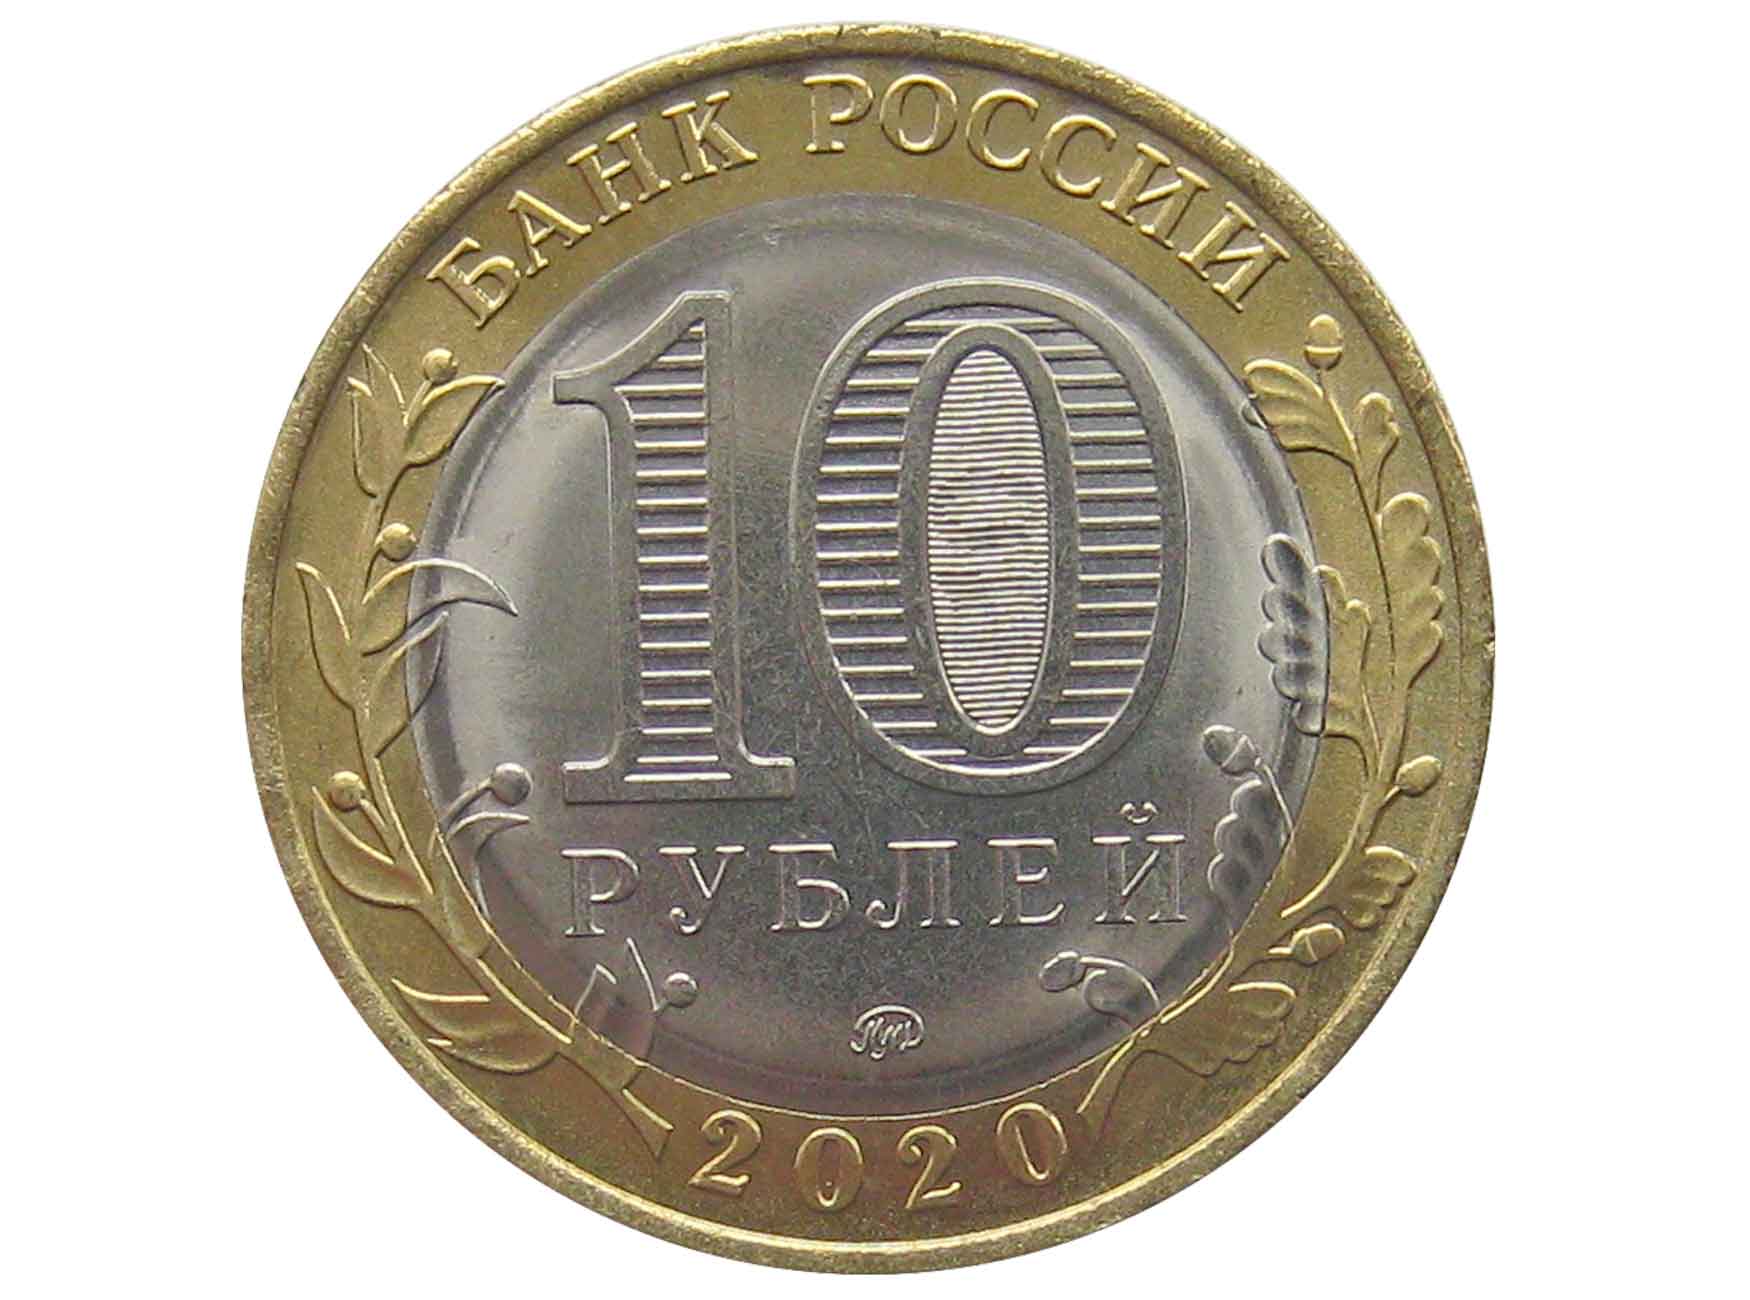 10 рублей 2011 спмд фото